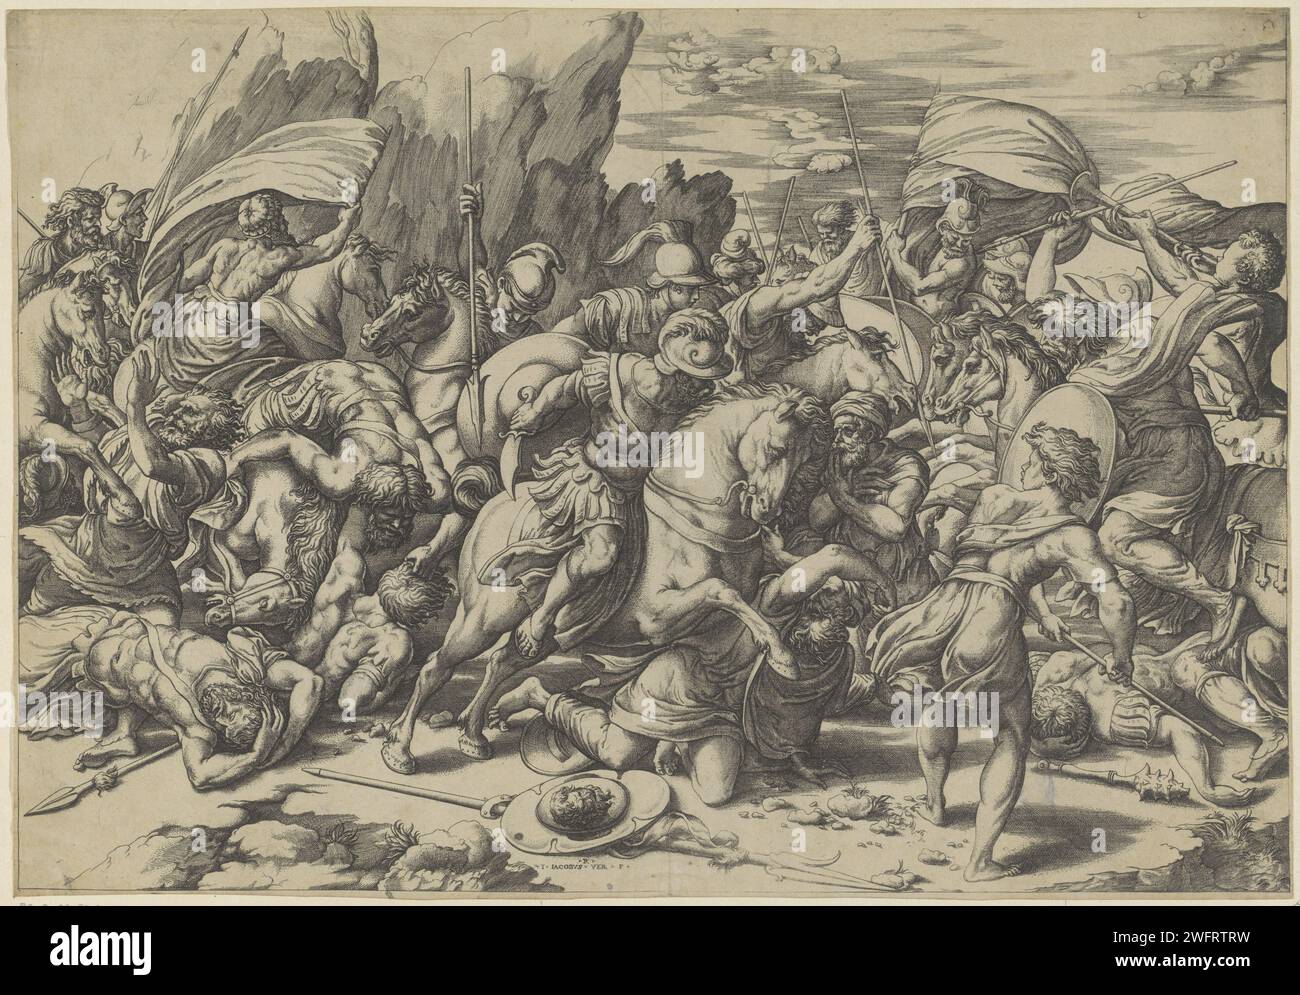 Kämpfen Sie mit Schilden und Lanzen, Giovanni Jacopo Caraglio, nach Rafaël, 1515 - 1565 drucken Soldaten zu Pferd und zu Fuß im Kampf mit Lanzen und Schilden. Vielleicht die Schlacht zwischen Römern und Barbaren. Italien Papiergravur Kampf Stockfoto